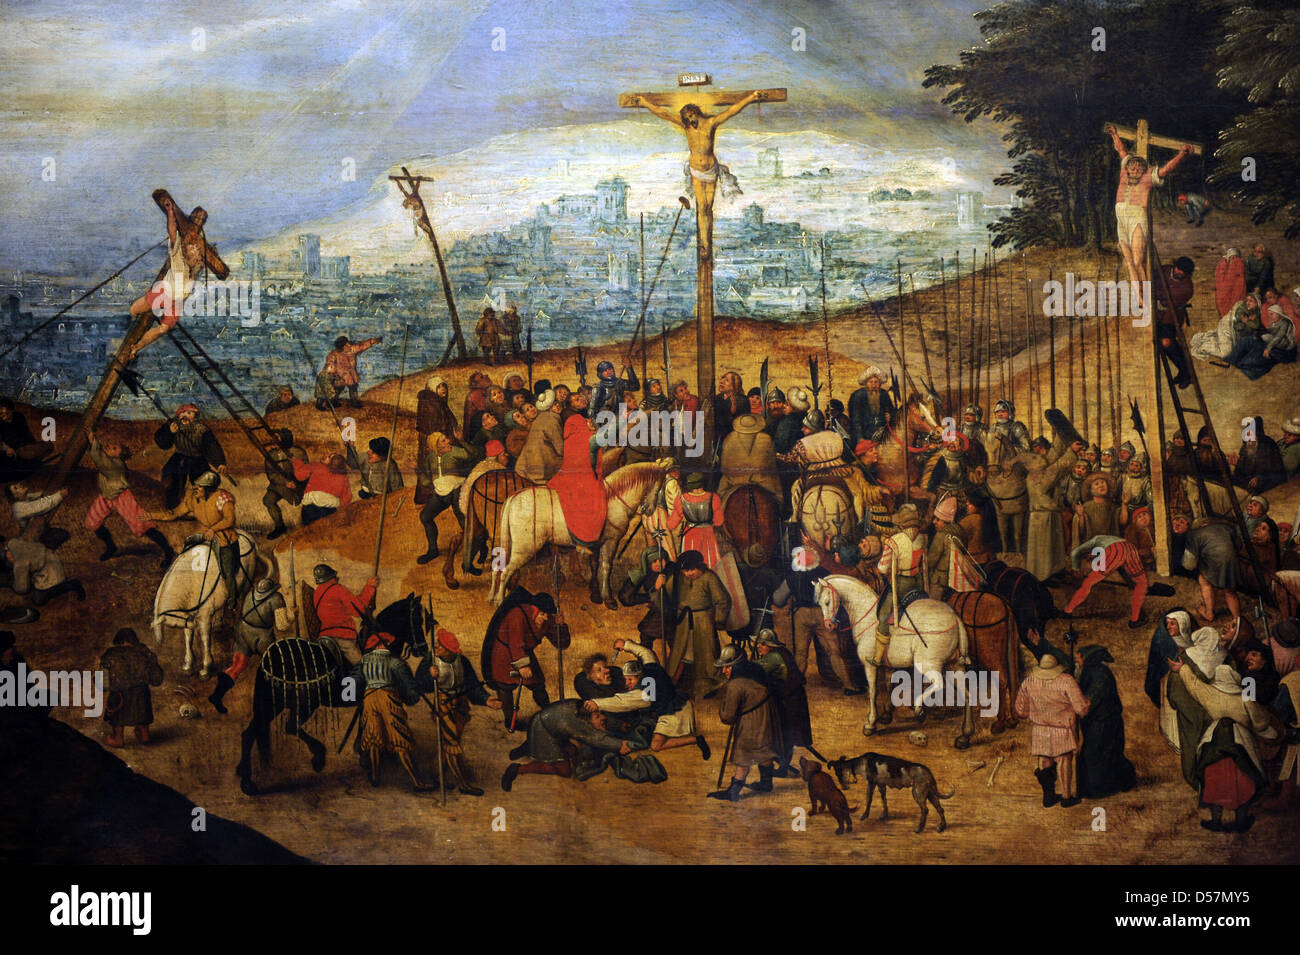 Pieter Brueghel il Giovane (1564-1638). Pittore fiammingo. La Crocifissione o il Calvario, 1617. Museo di Belle Arti. Budapest. Foto Stock